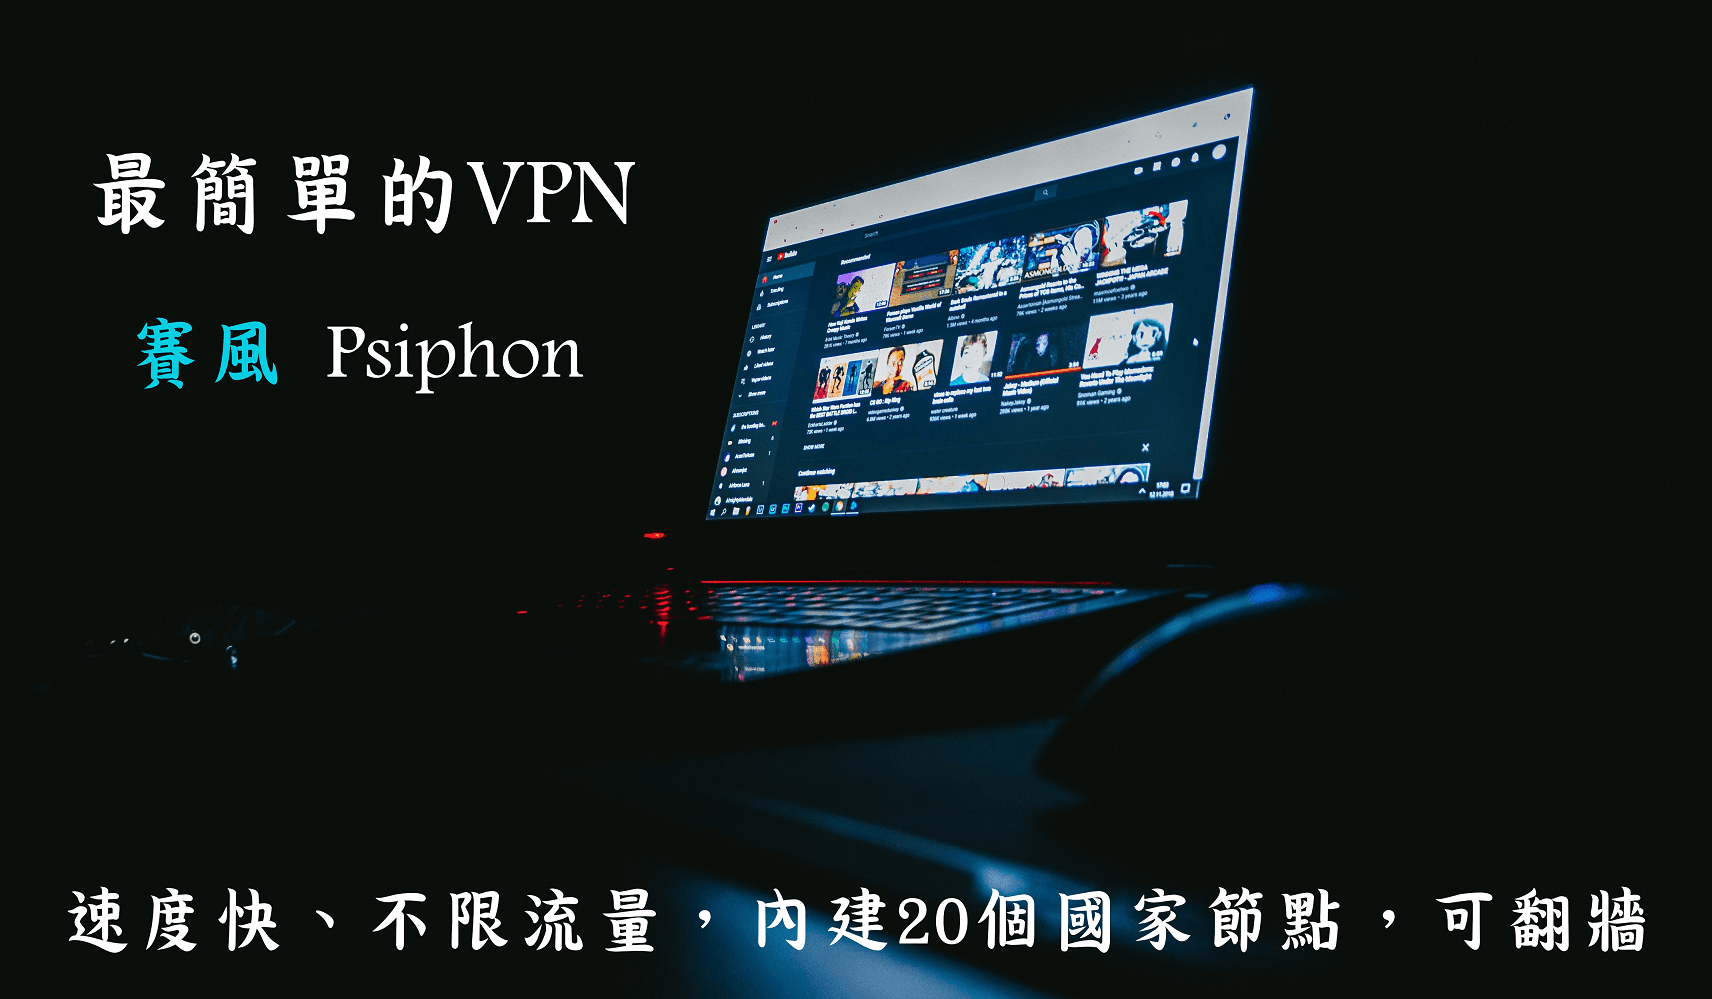 【免費VPN】賽風 Psiphon 不限流量、免安裝、可翻牆，使用超簡單